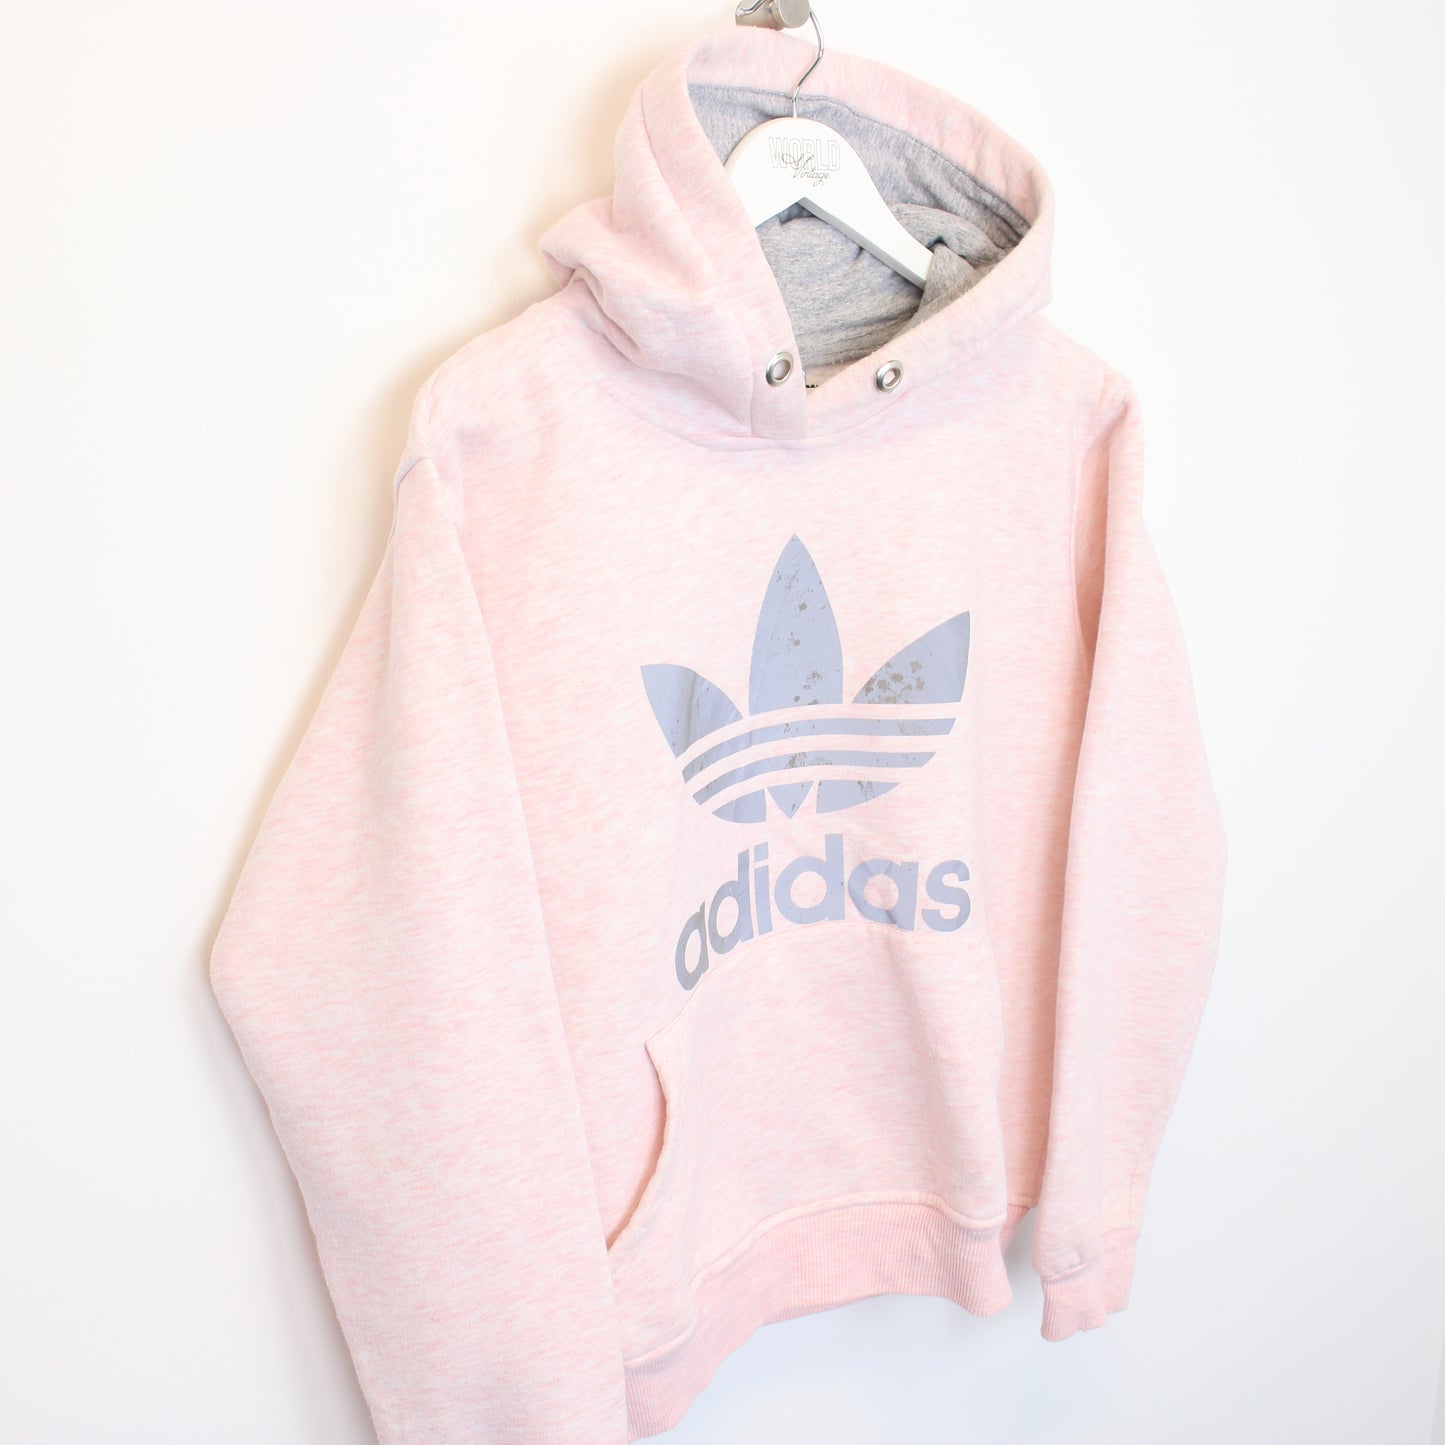 Vintage Adidas hoodie in black and pink. Best fits S